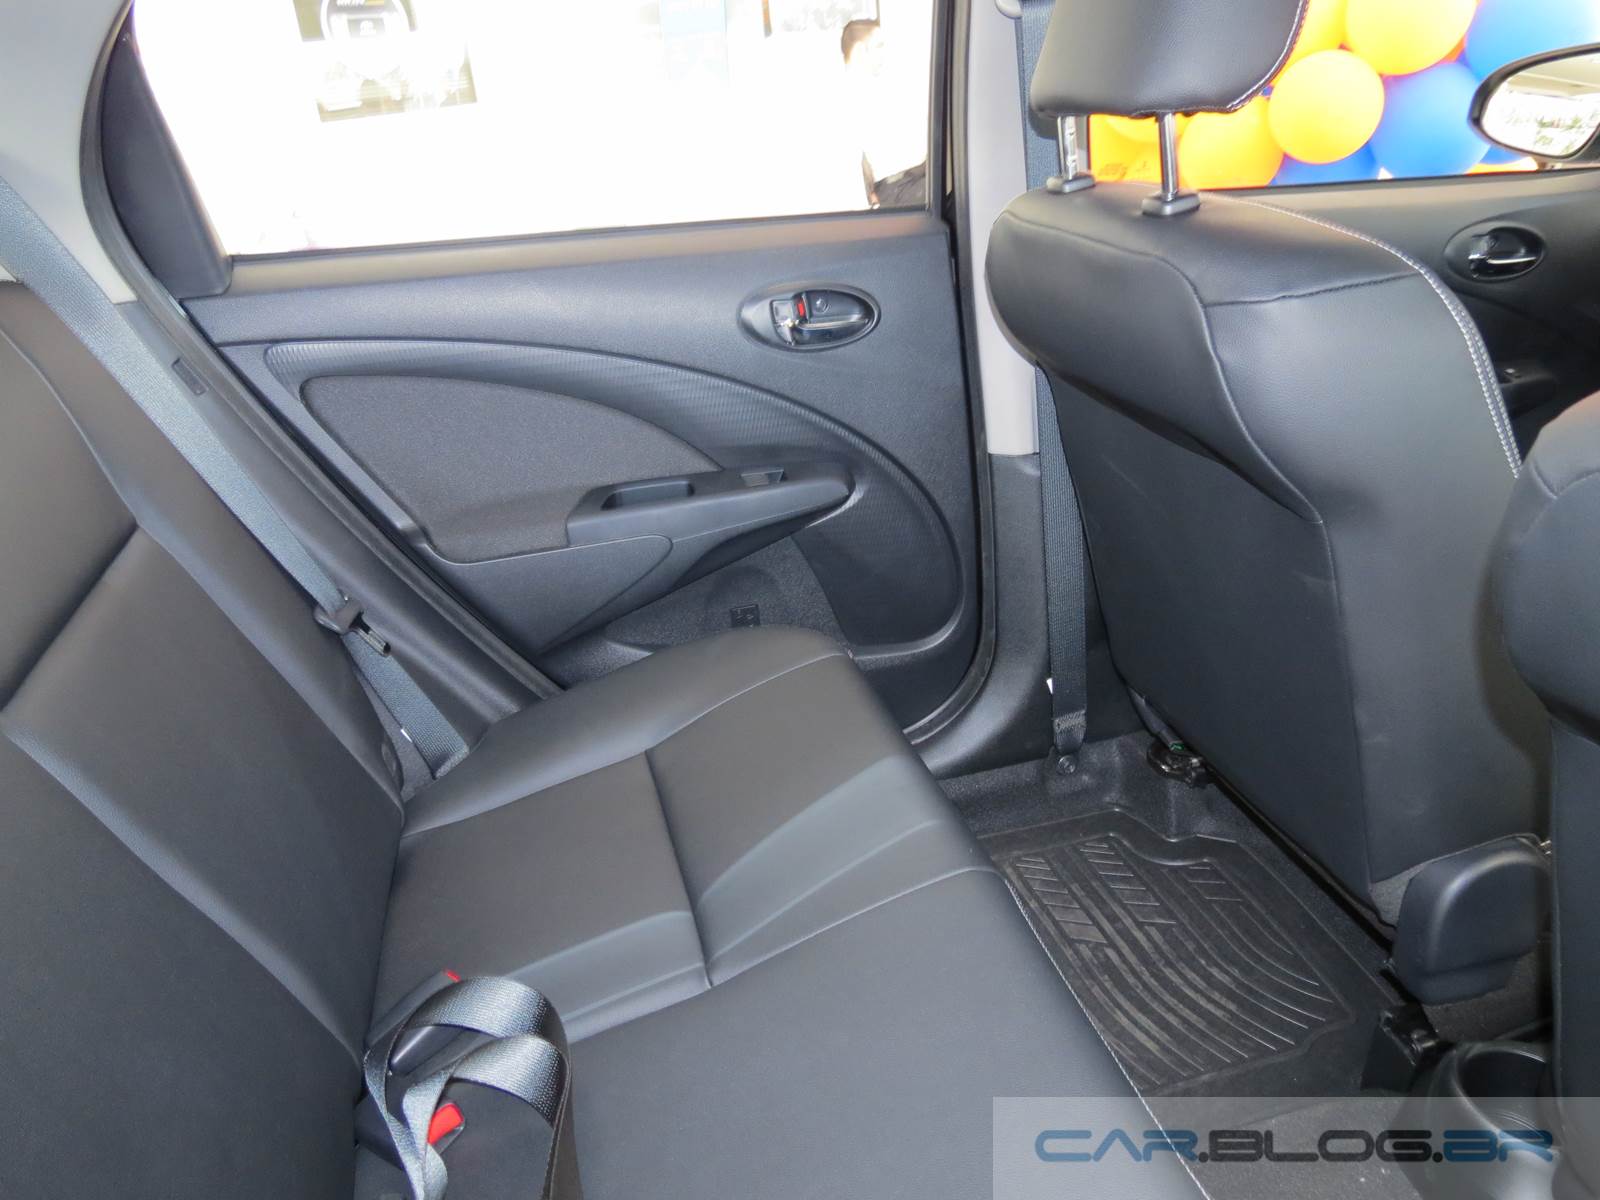 Toyota Etios XLS 2015 - interior